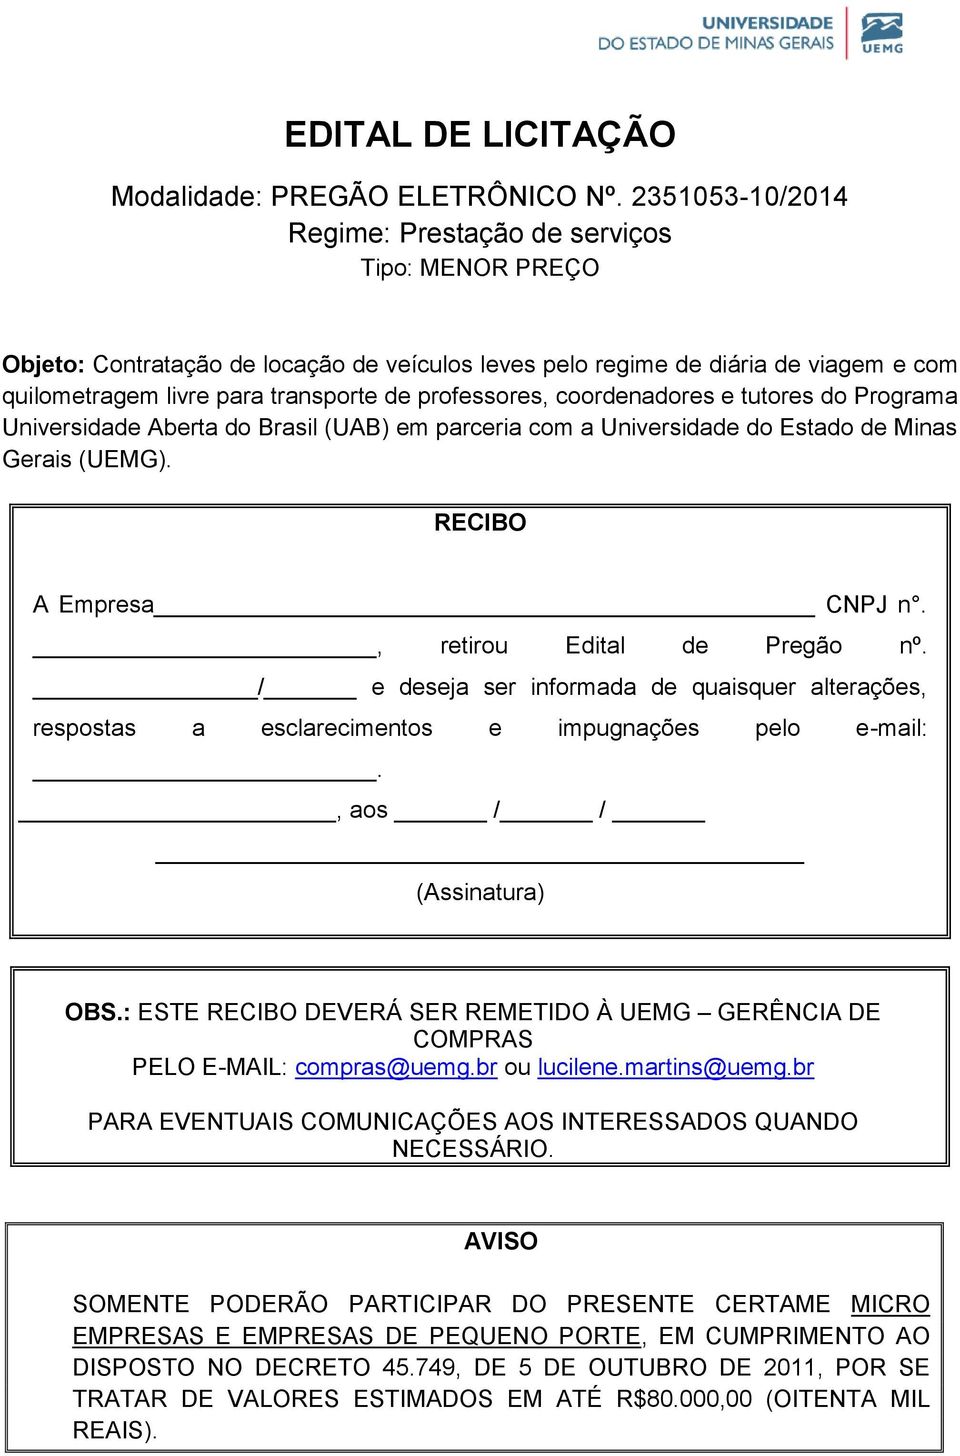 professores, coordenadores e tutores do Programa Universidade Aberta do Brasil (UAB) em parceria com a Universidade do Estado de Minas Gerais (UEMG). RECIBO A Empresa CNPJ n.